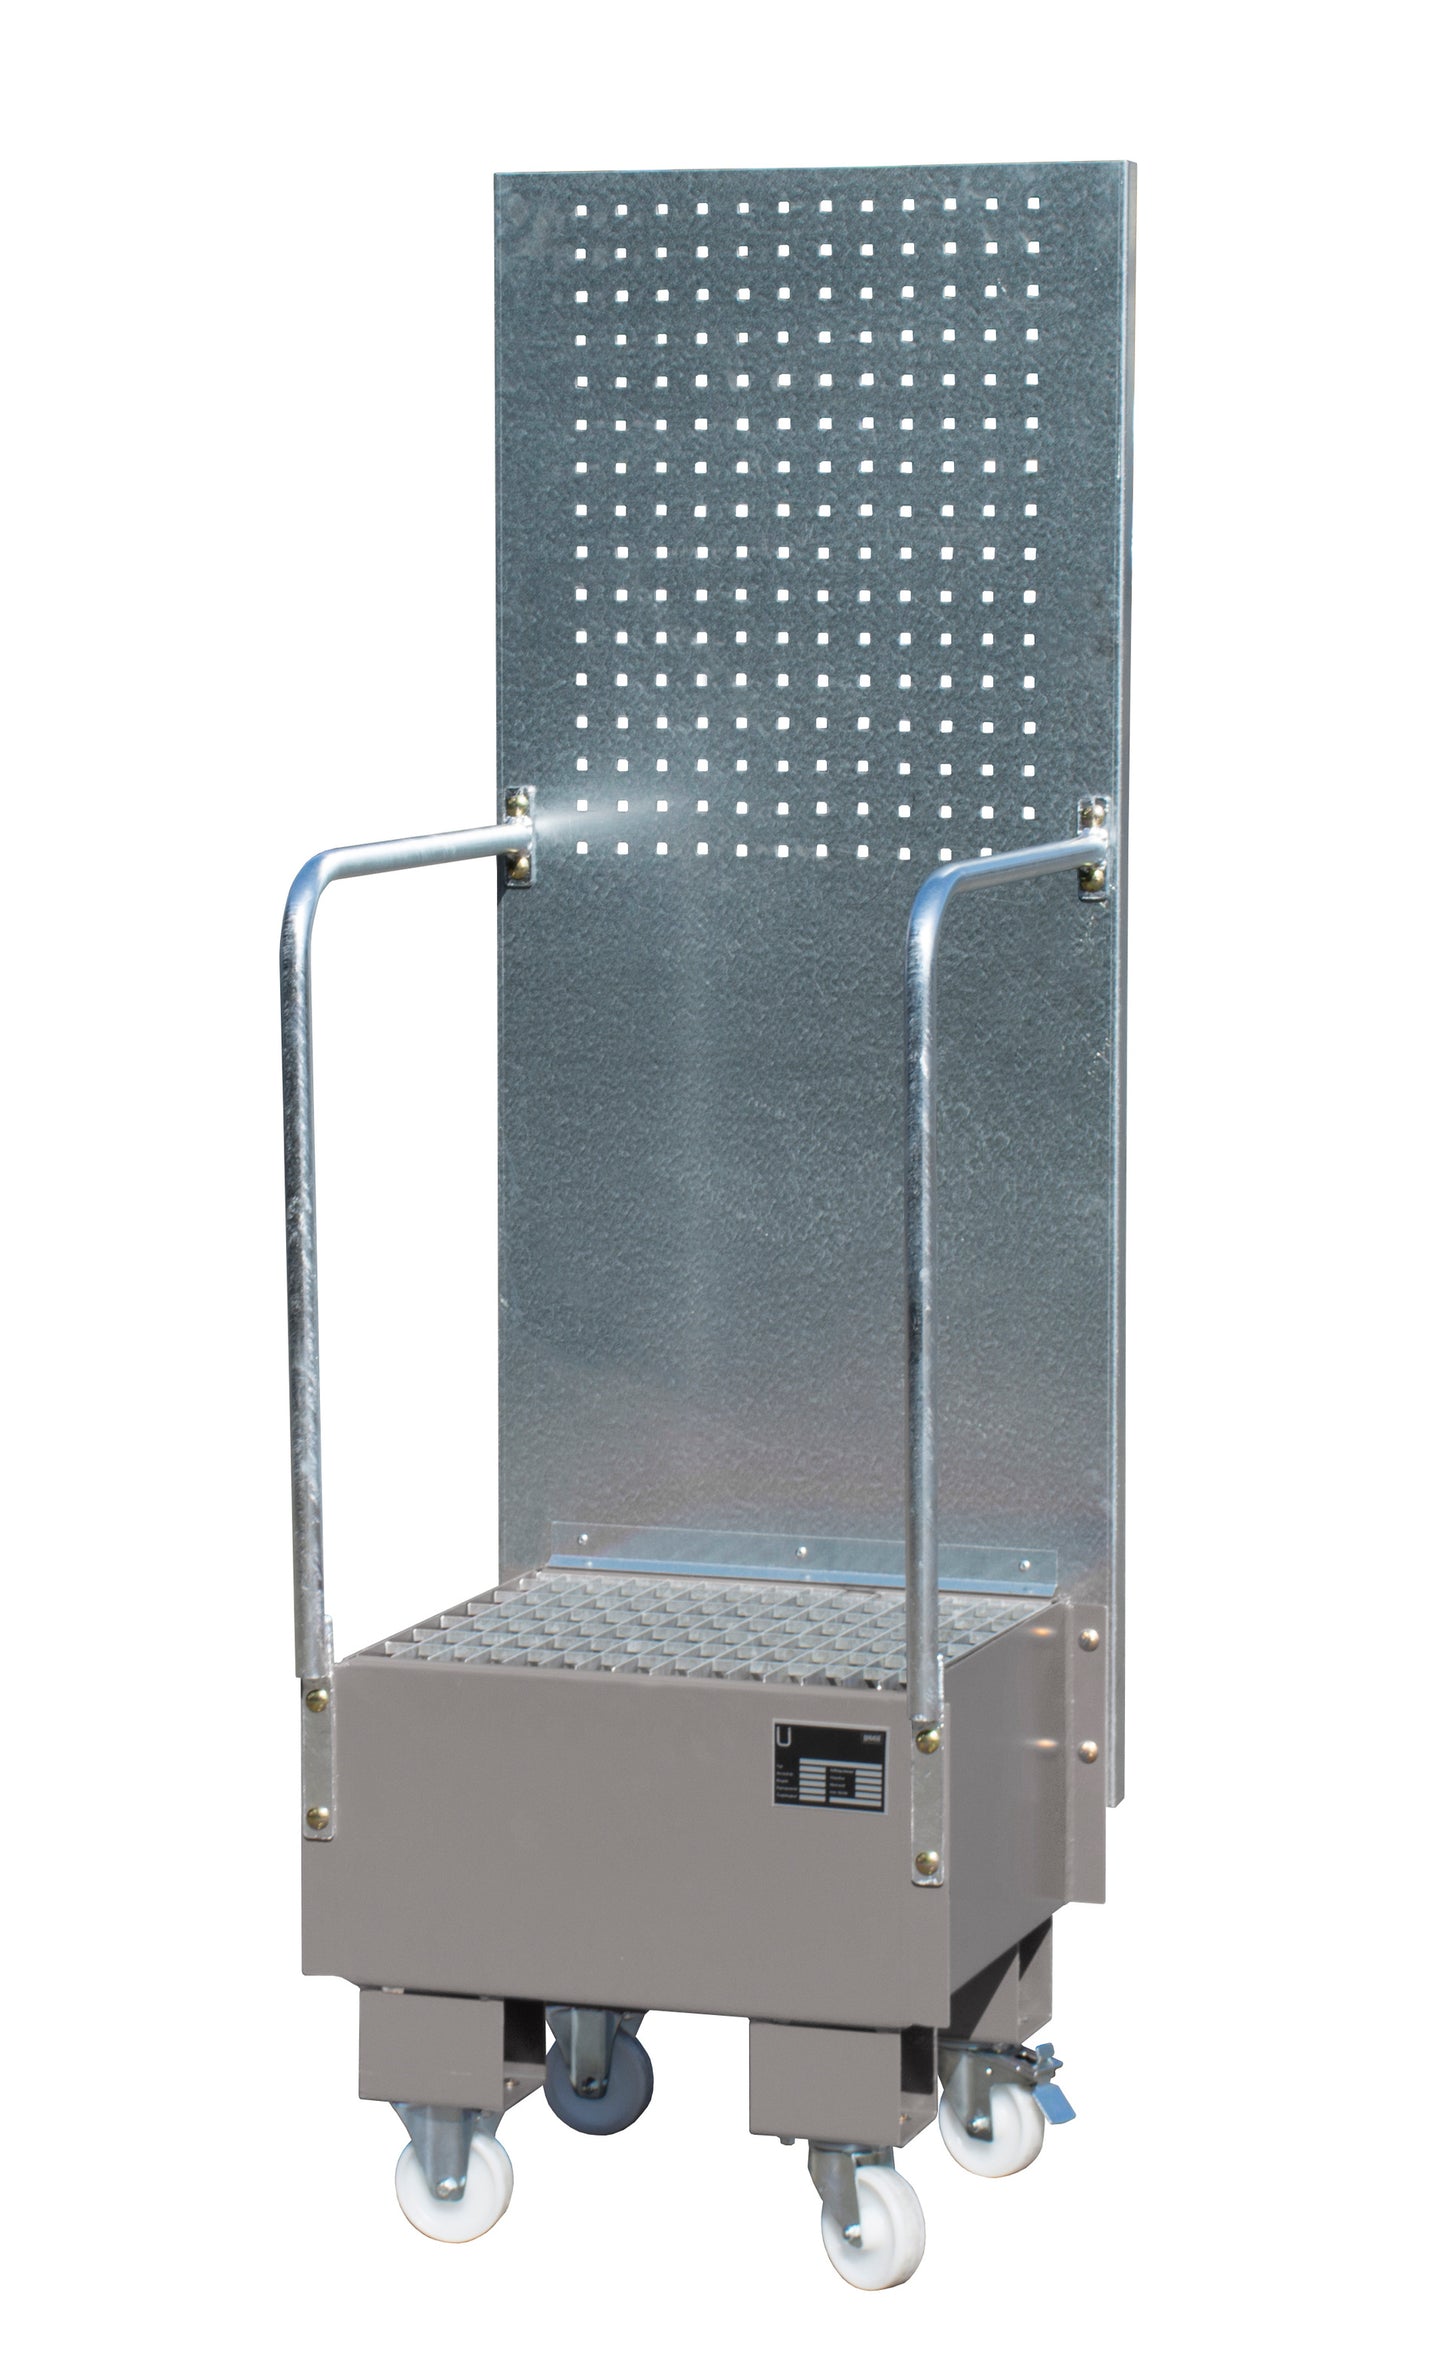 Bauer LPW 60-1 Mobilt uppsamlingskärl med perforerad panel för ett 60 liters fat